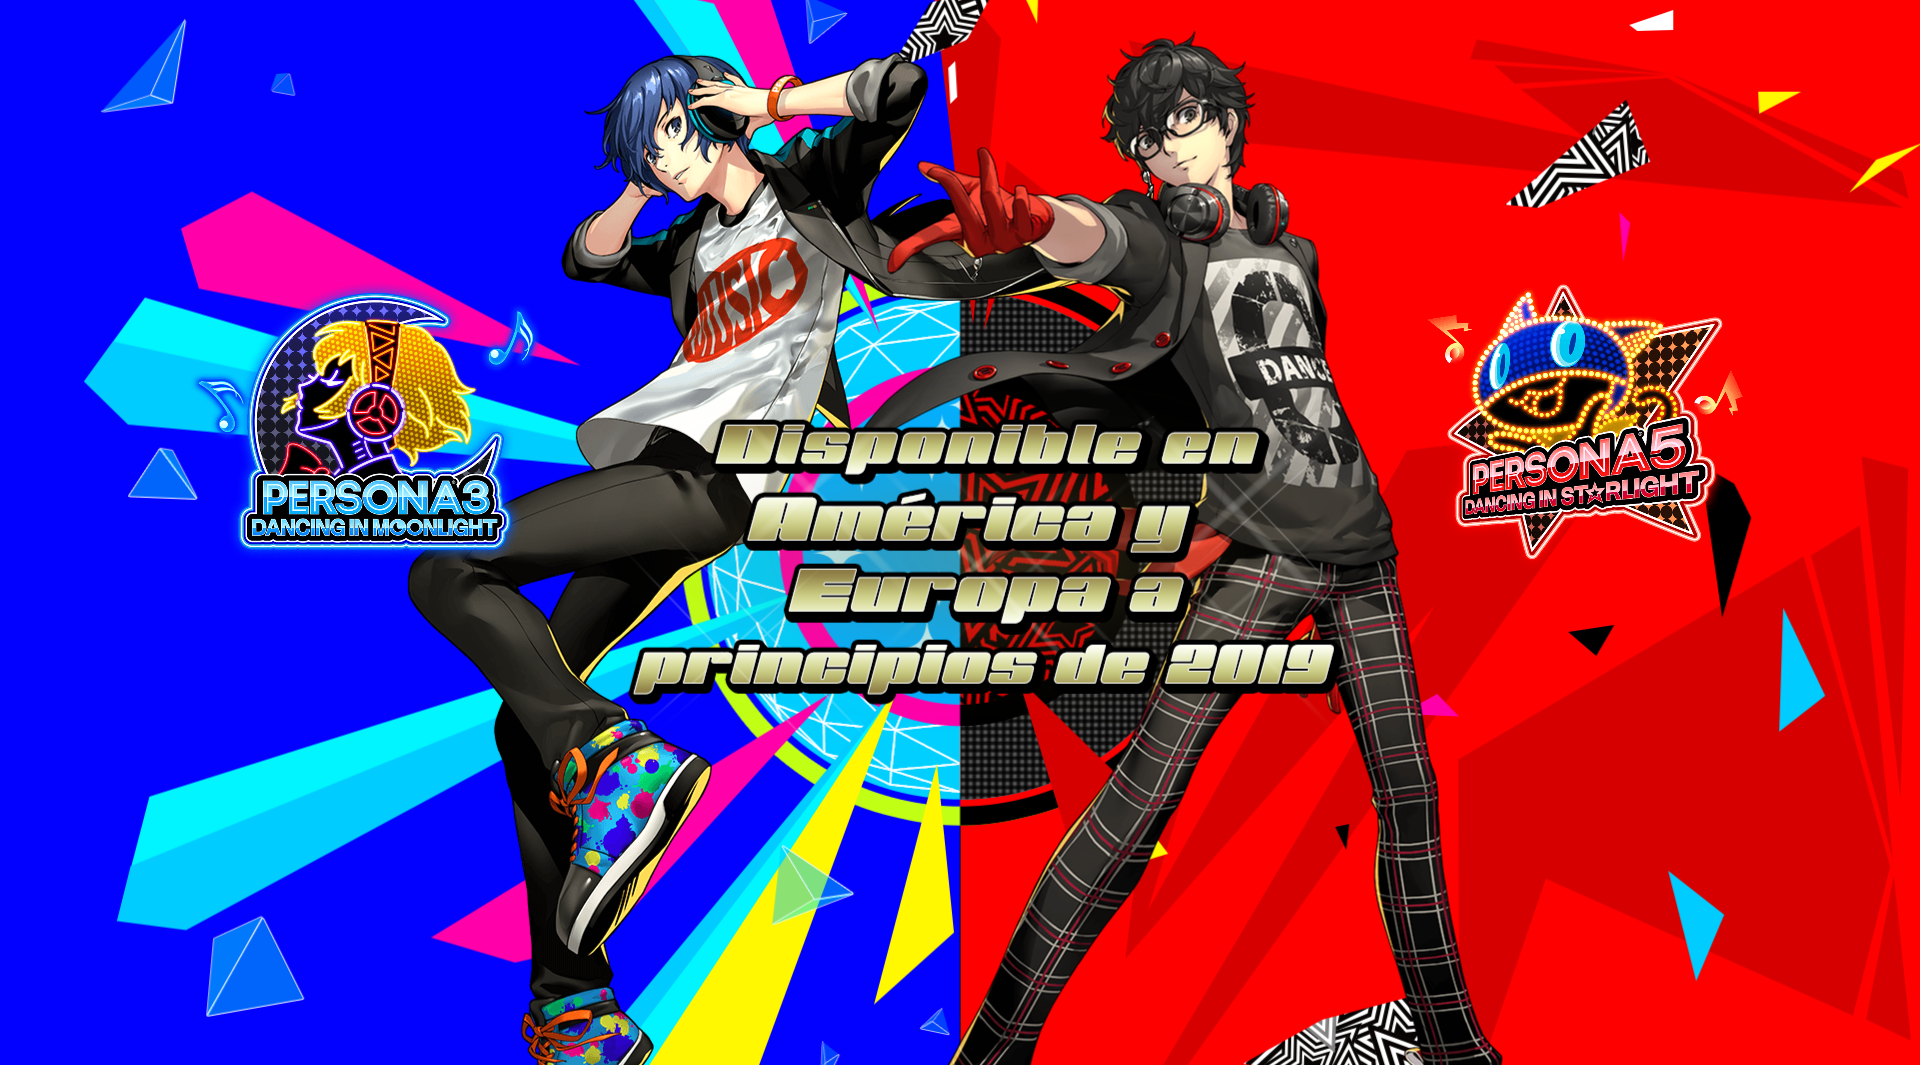 Persona 3: Dancing in Moonlight y Persona 5: Dancing in Starlight se lanzarán a principios de 2019 para PS4 y PS Vita ¡traducidos al español!